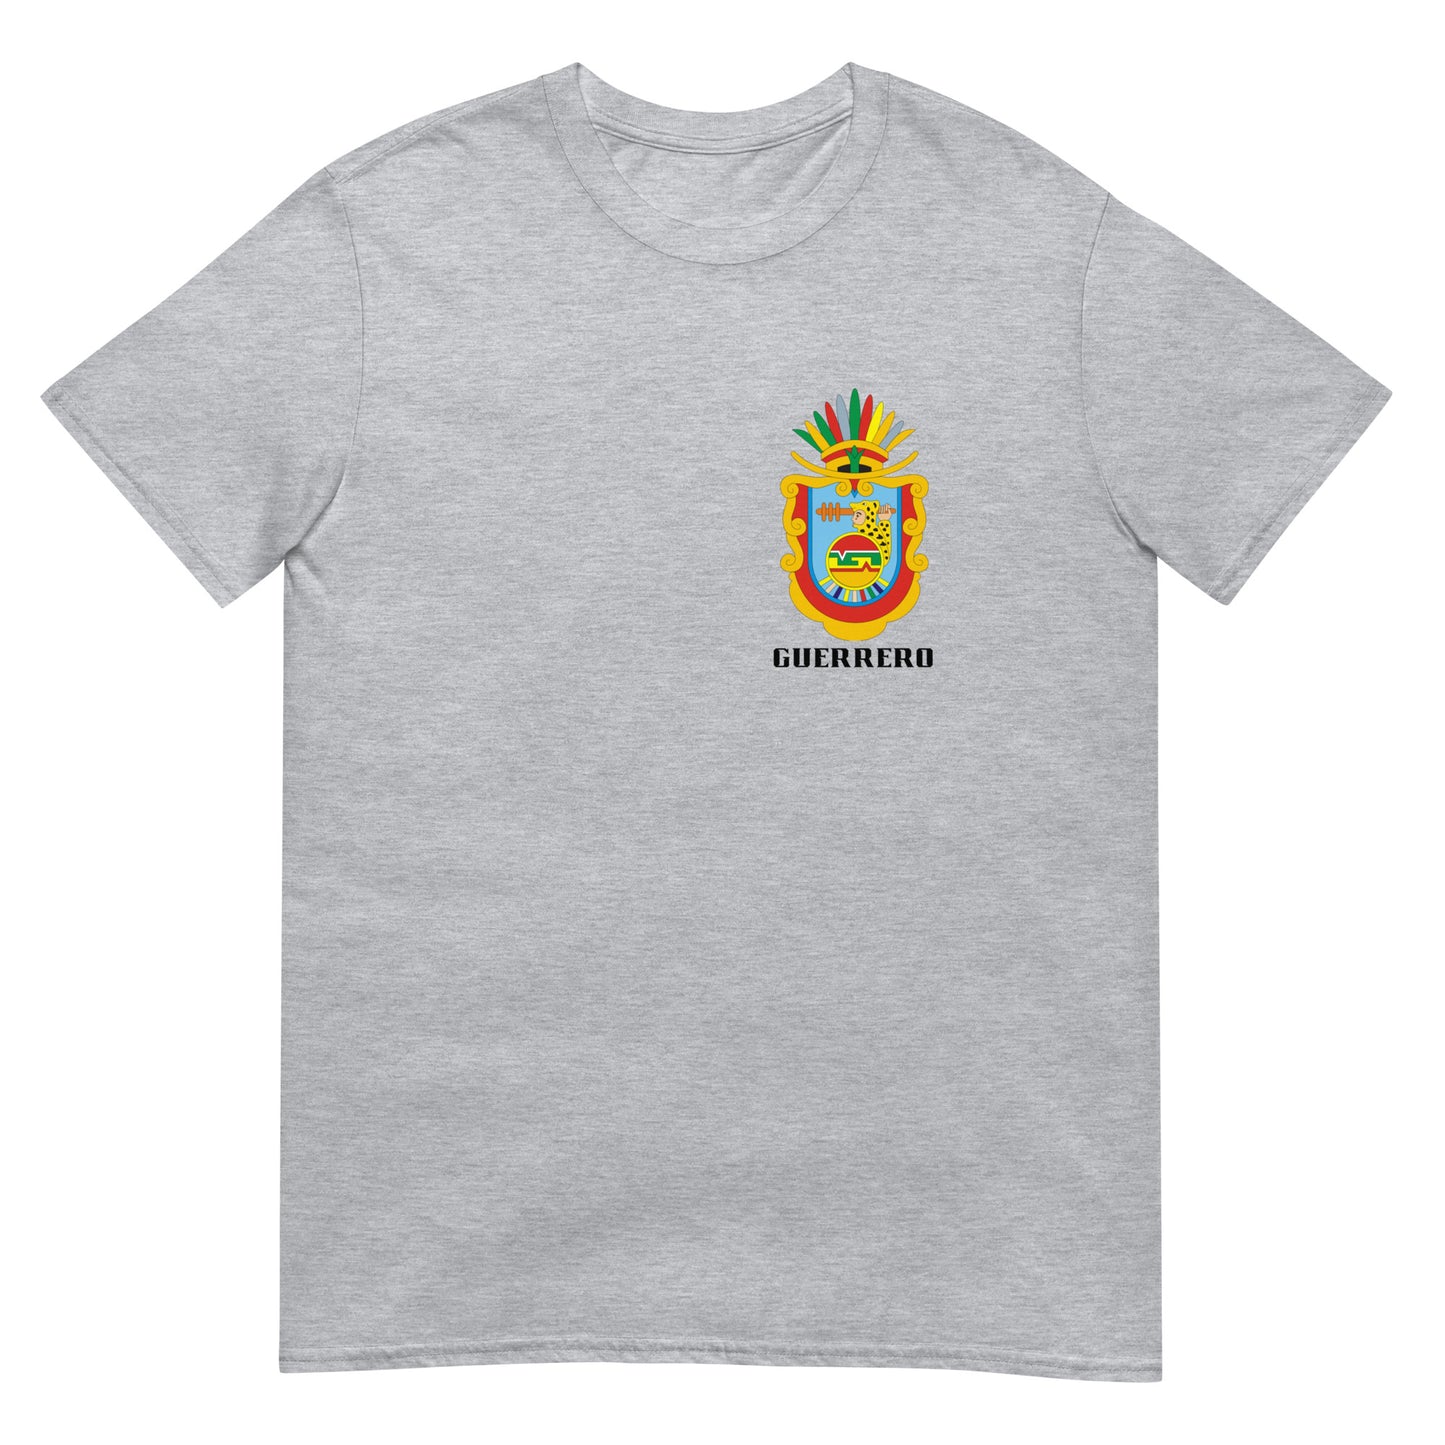 Guerrero- T-Shirt